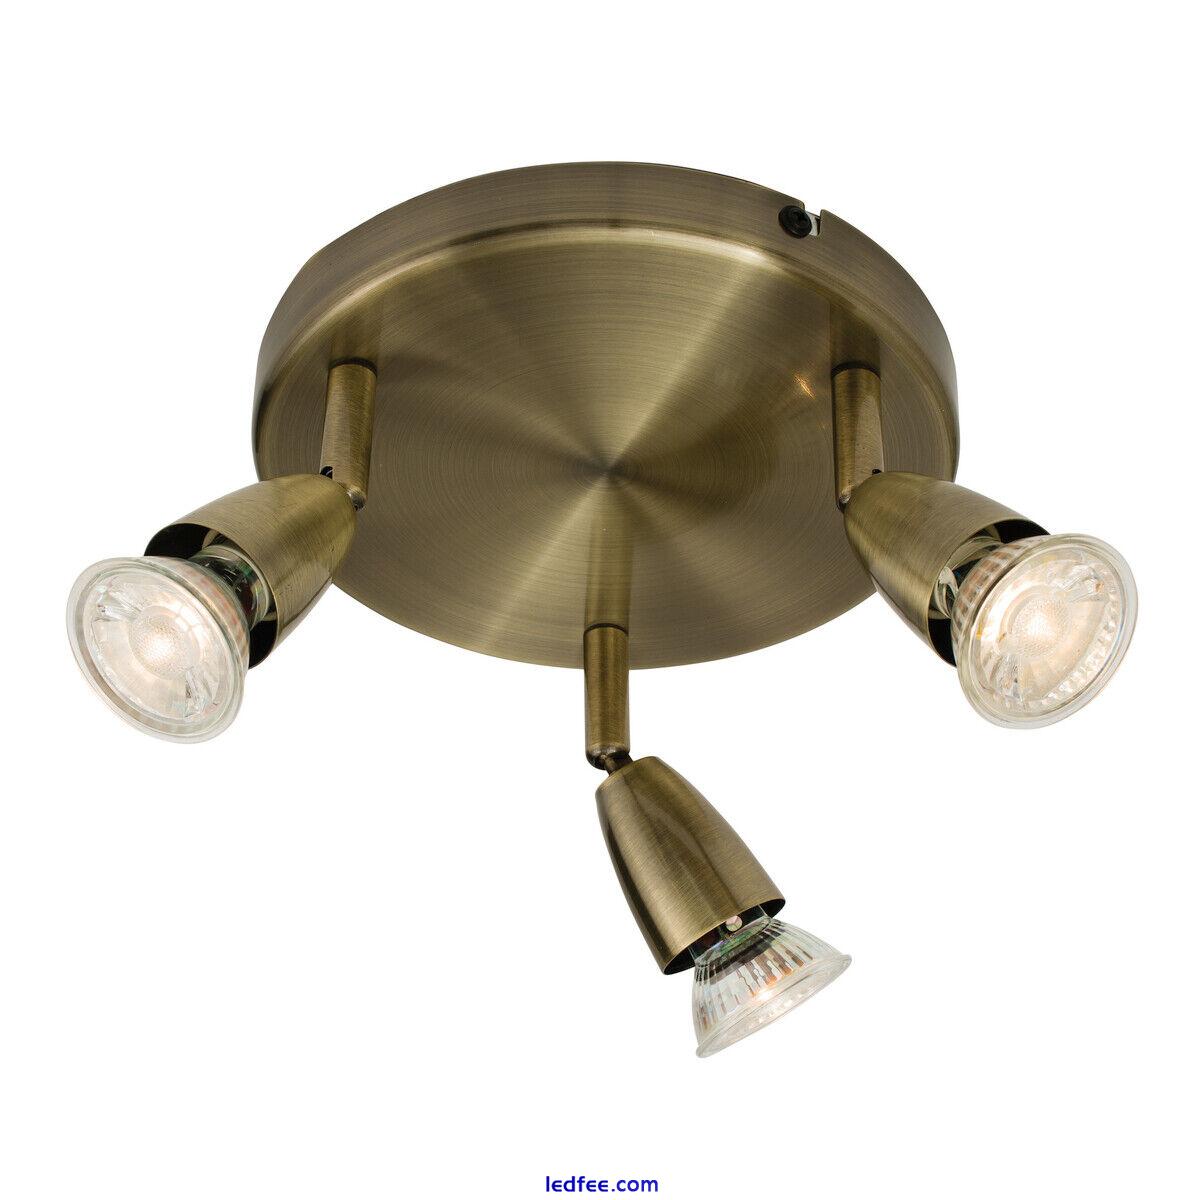 Saxby Amalfi Triple Head GU10 Spotlight Swivel Ceiling Mounted Dimmable Light 0 